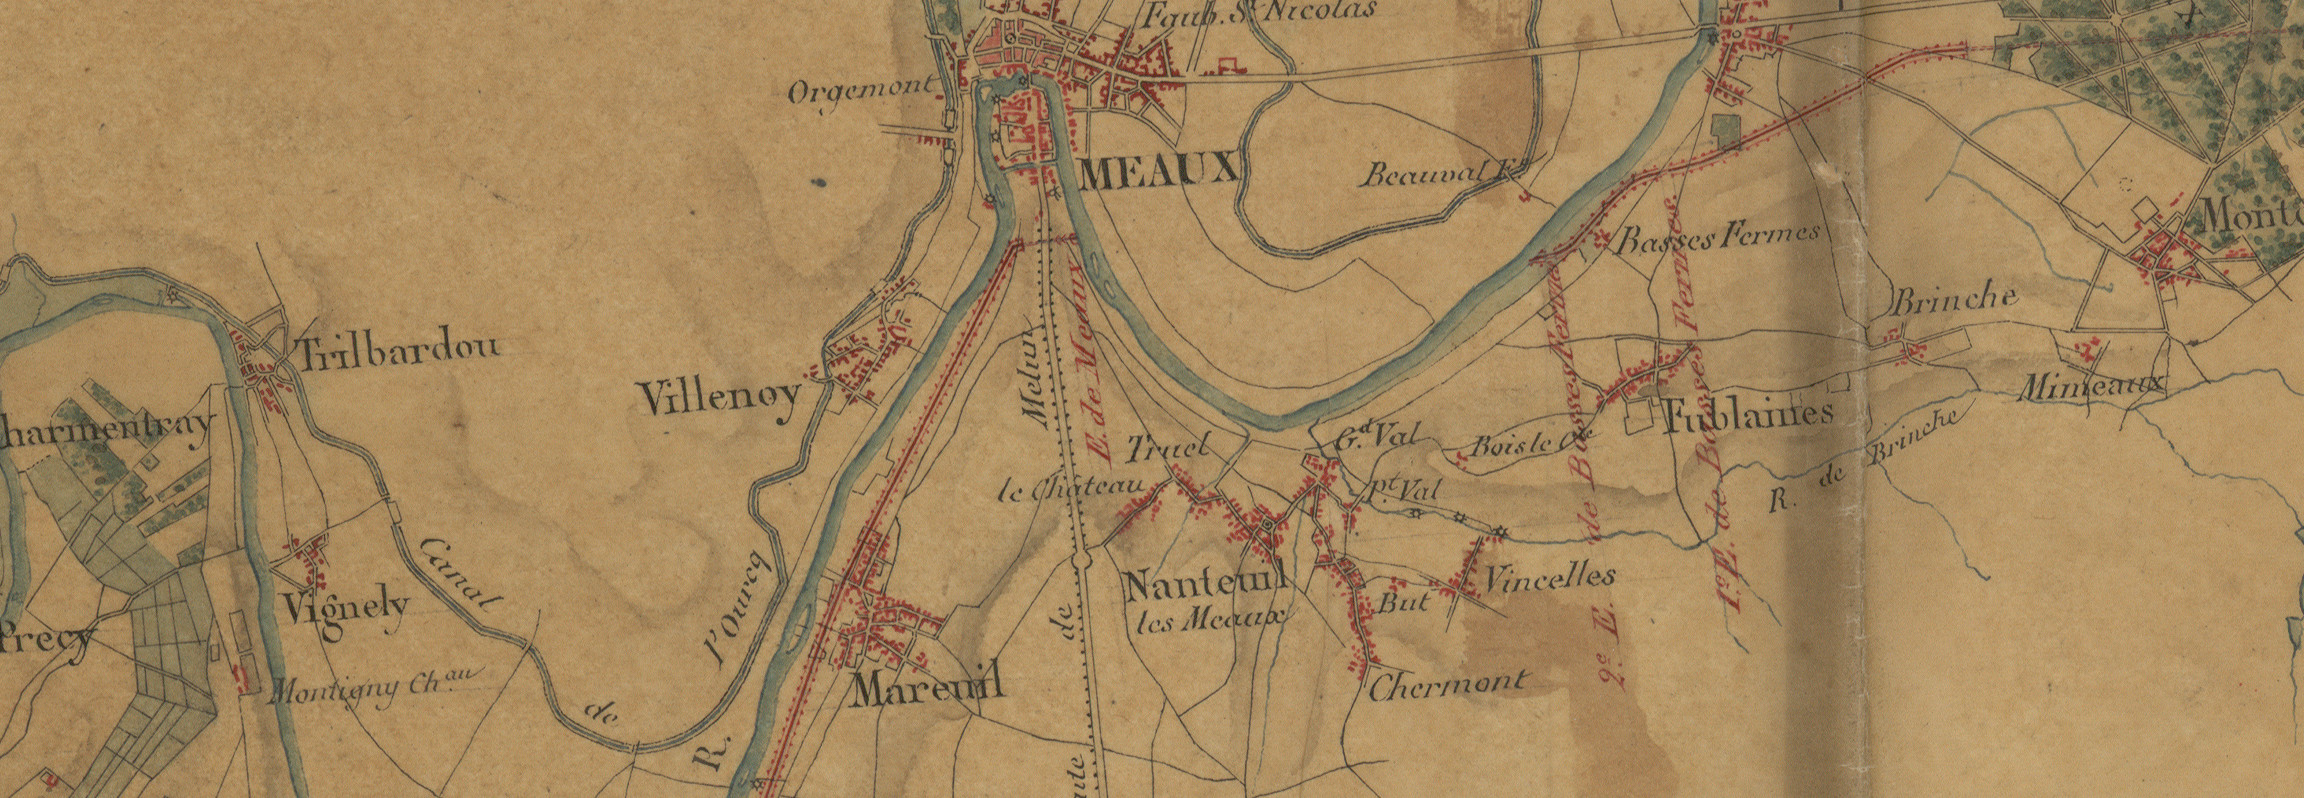 Vallée de la Marne de Fronville à Chamouilley levé par les géomètres Dupaty, Minguet, Matrat, Thévenot